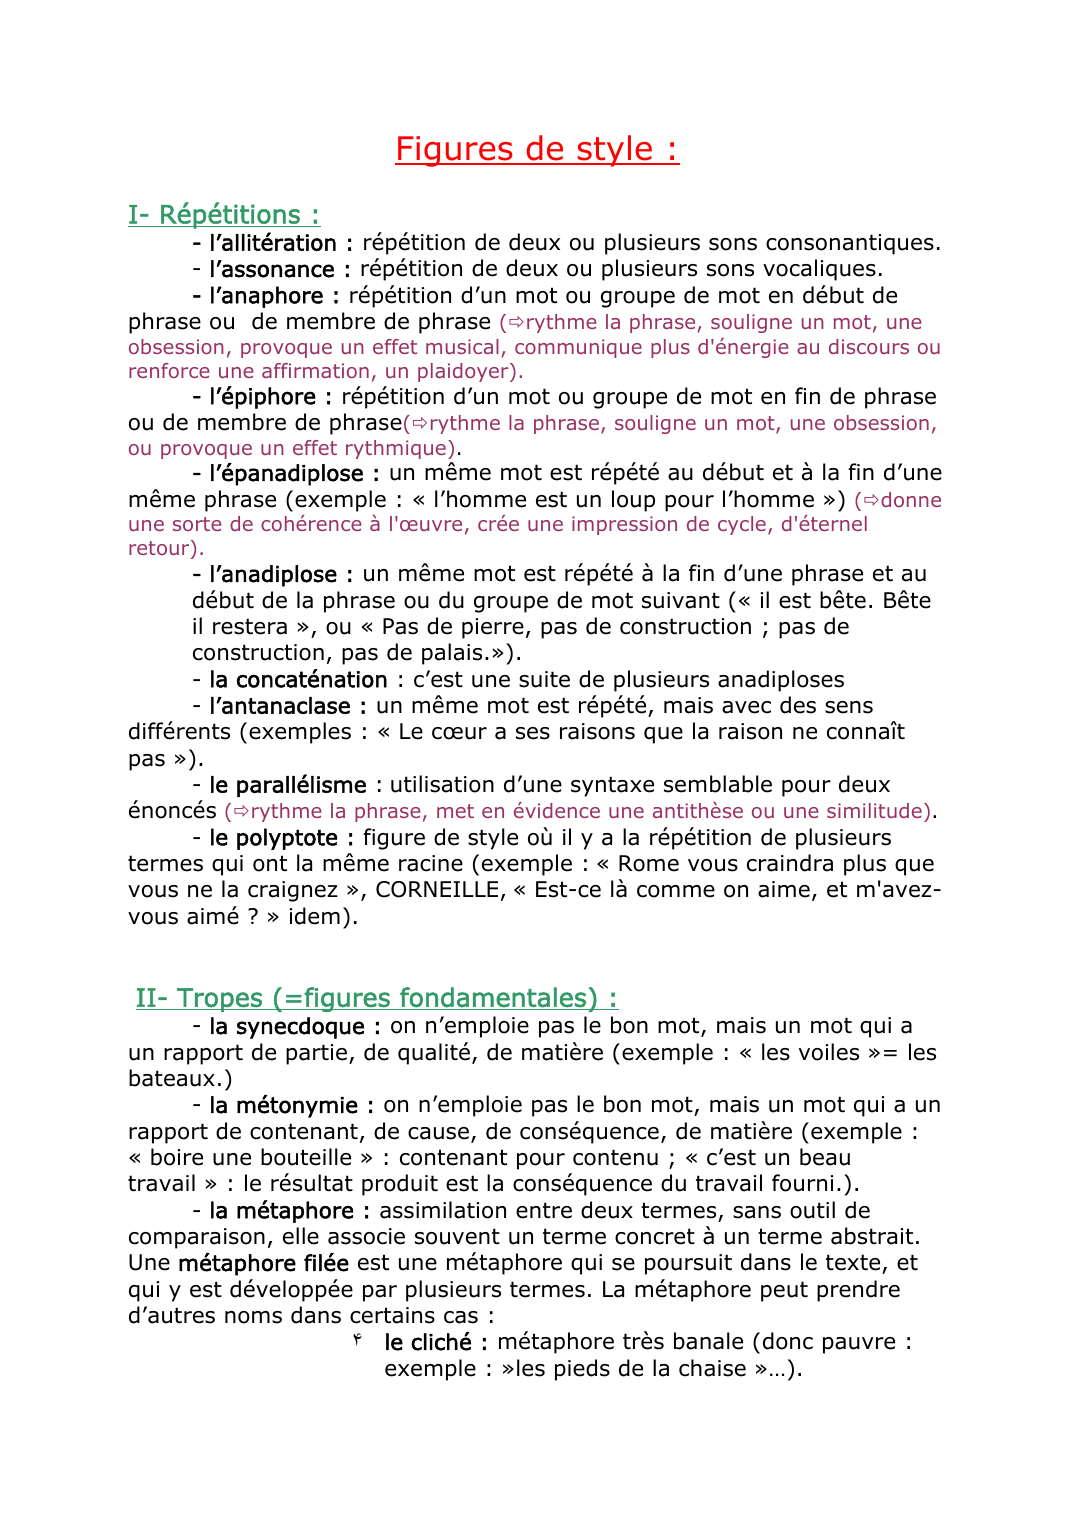 Prévisualisation du document Figures de style :I- Répétitions :phrasel'allitération : répétition de deux ou plusieurs sons consonantiques.